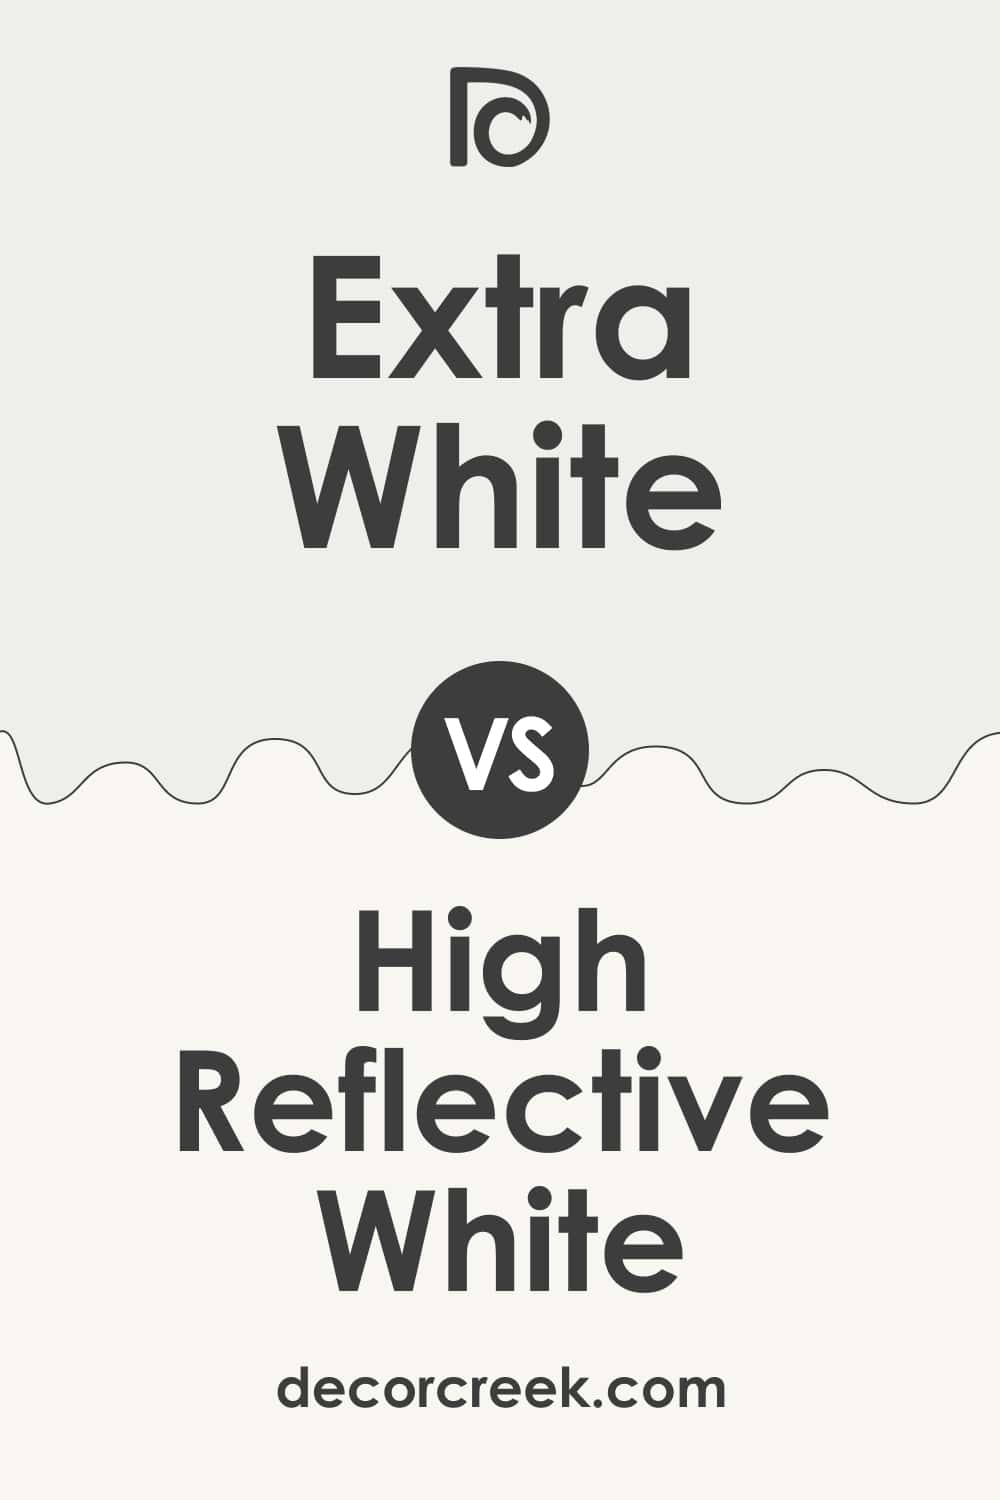 Extra White vs High Reflective White